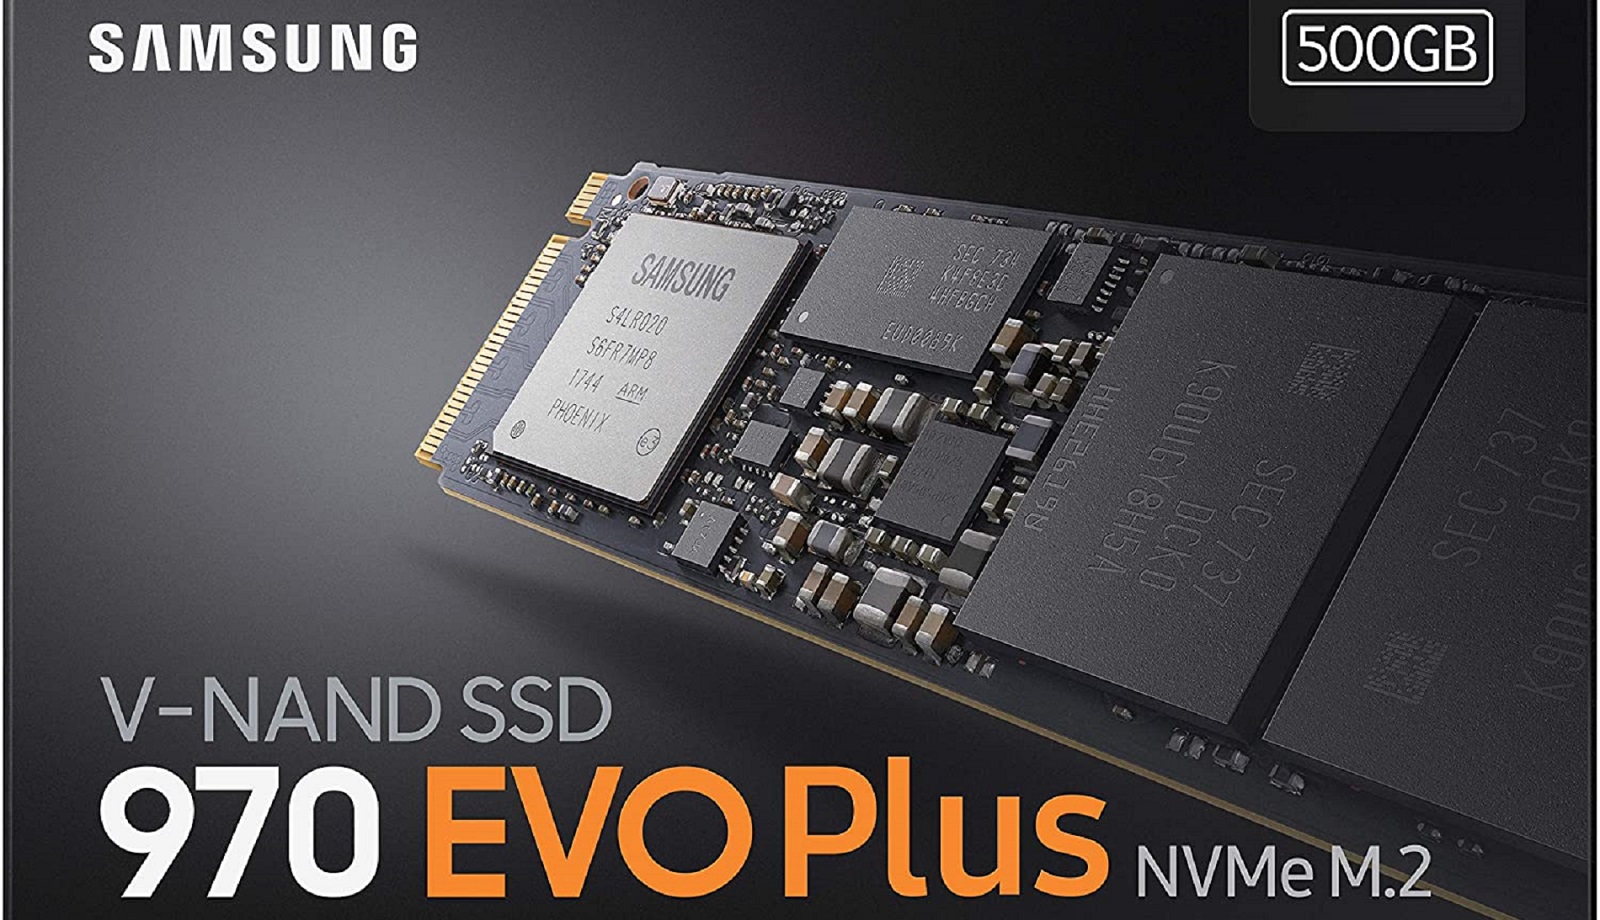 Samsung réagit enfin aux soupçons d'altérations des SSD 970 EVO Plus